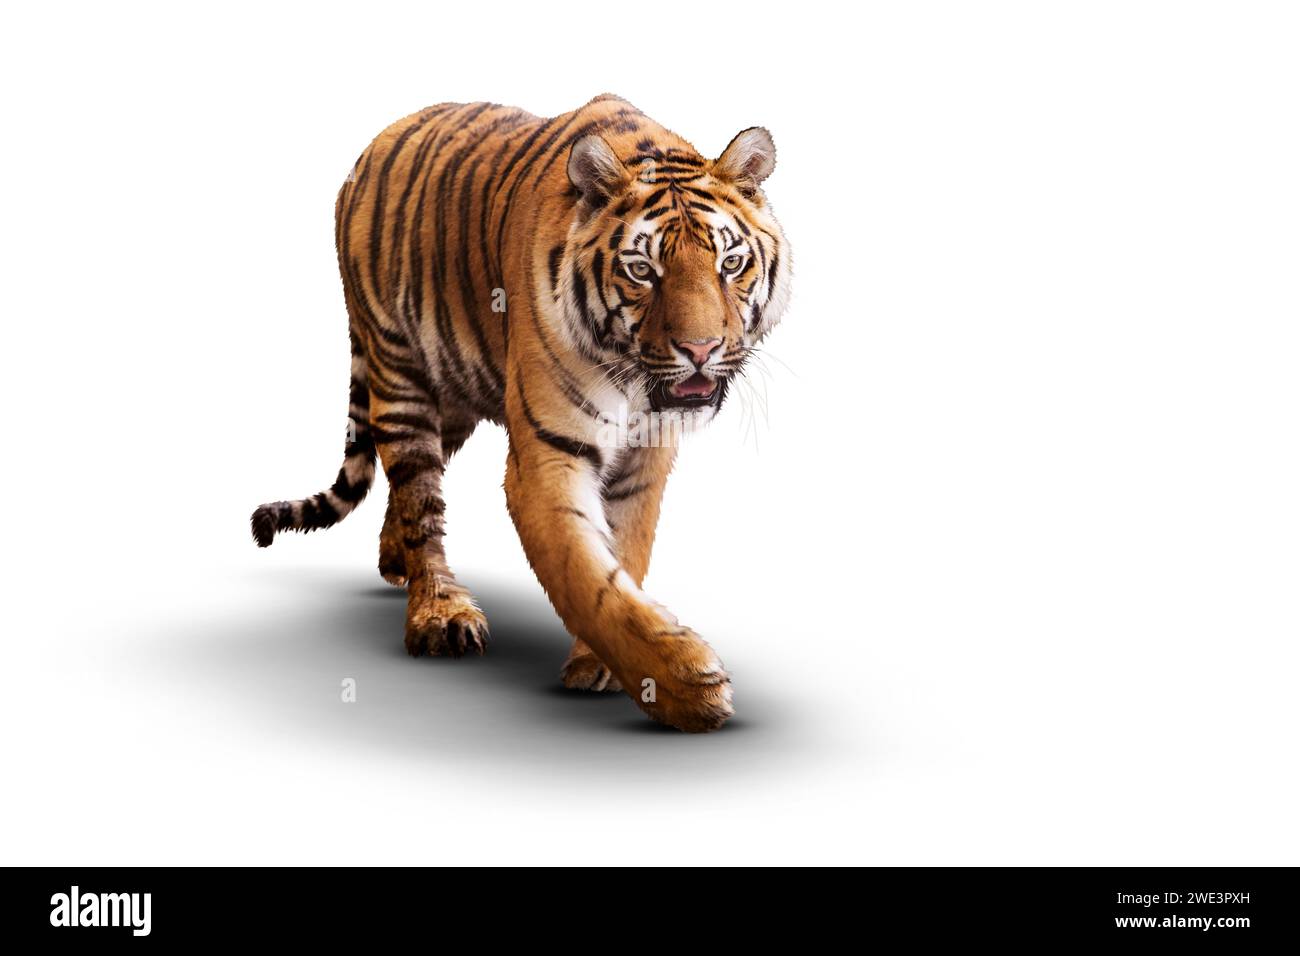 Una tigre cammina in modo deciso su uno sfondo bianco, con lo sguardo fisso e la sua posizione potente Foto Stock